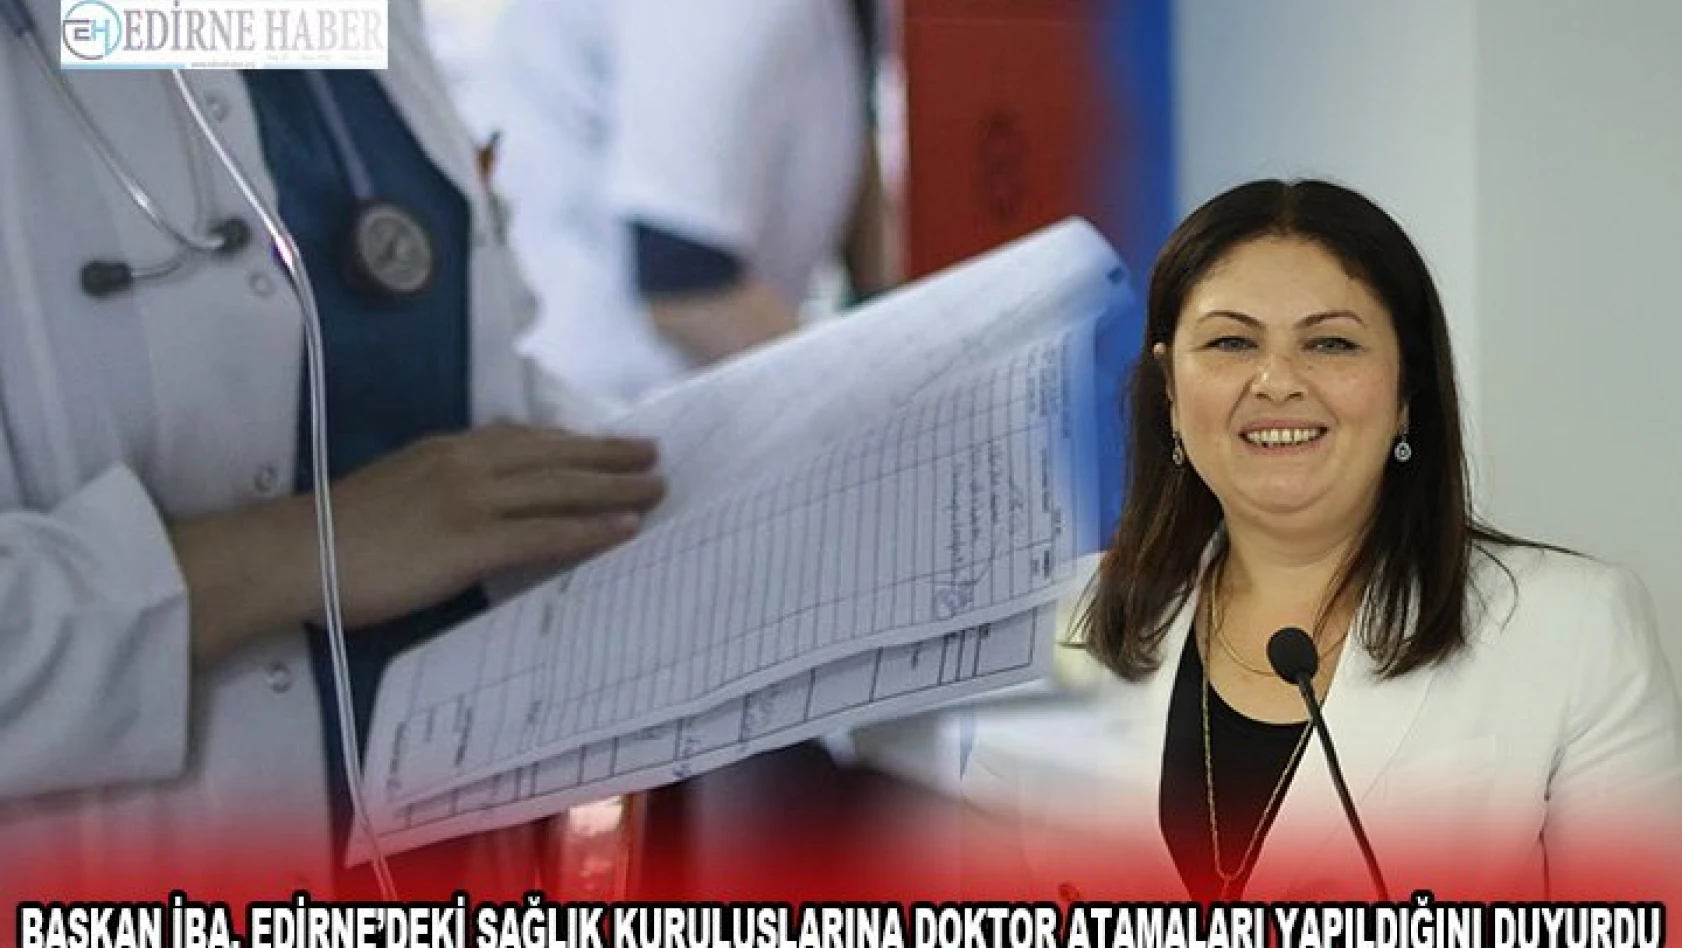 Başkan İba, Edirne'deki sağlık kuruluşlarına doktor atamaları yapıldığını duyurdu